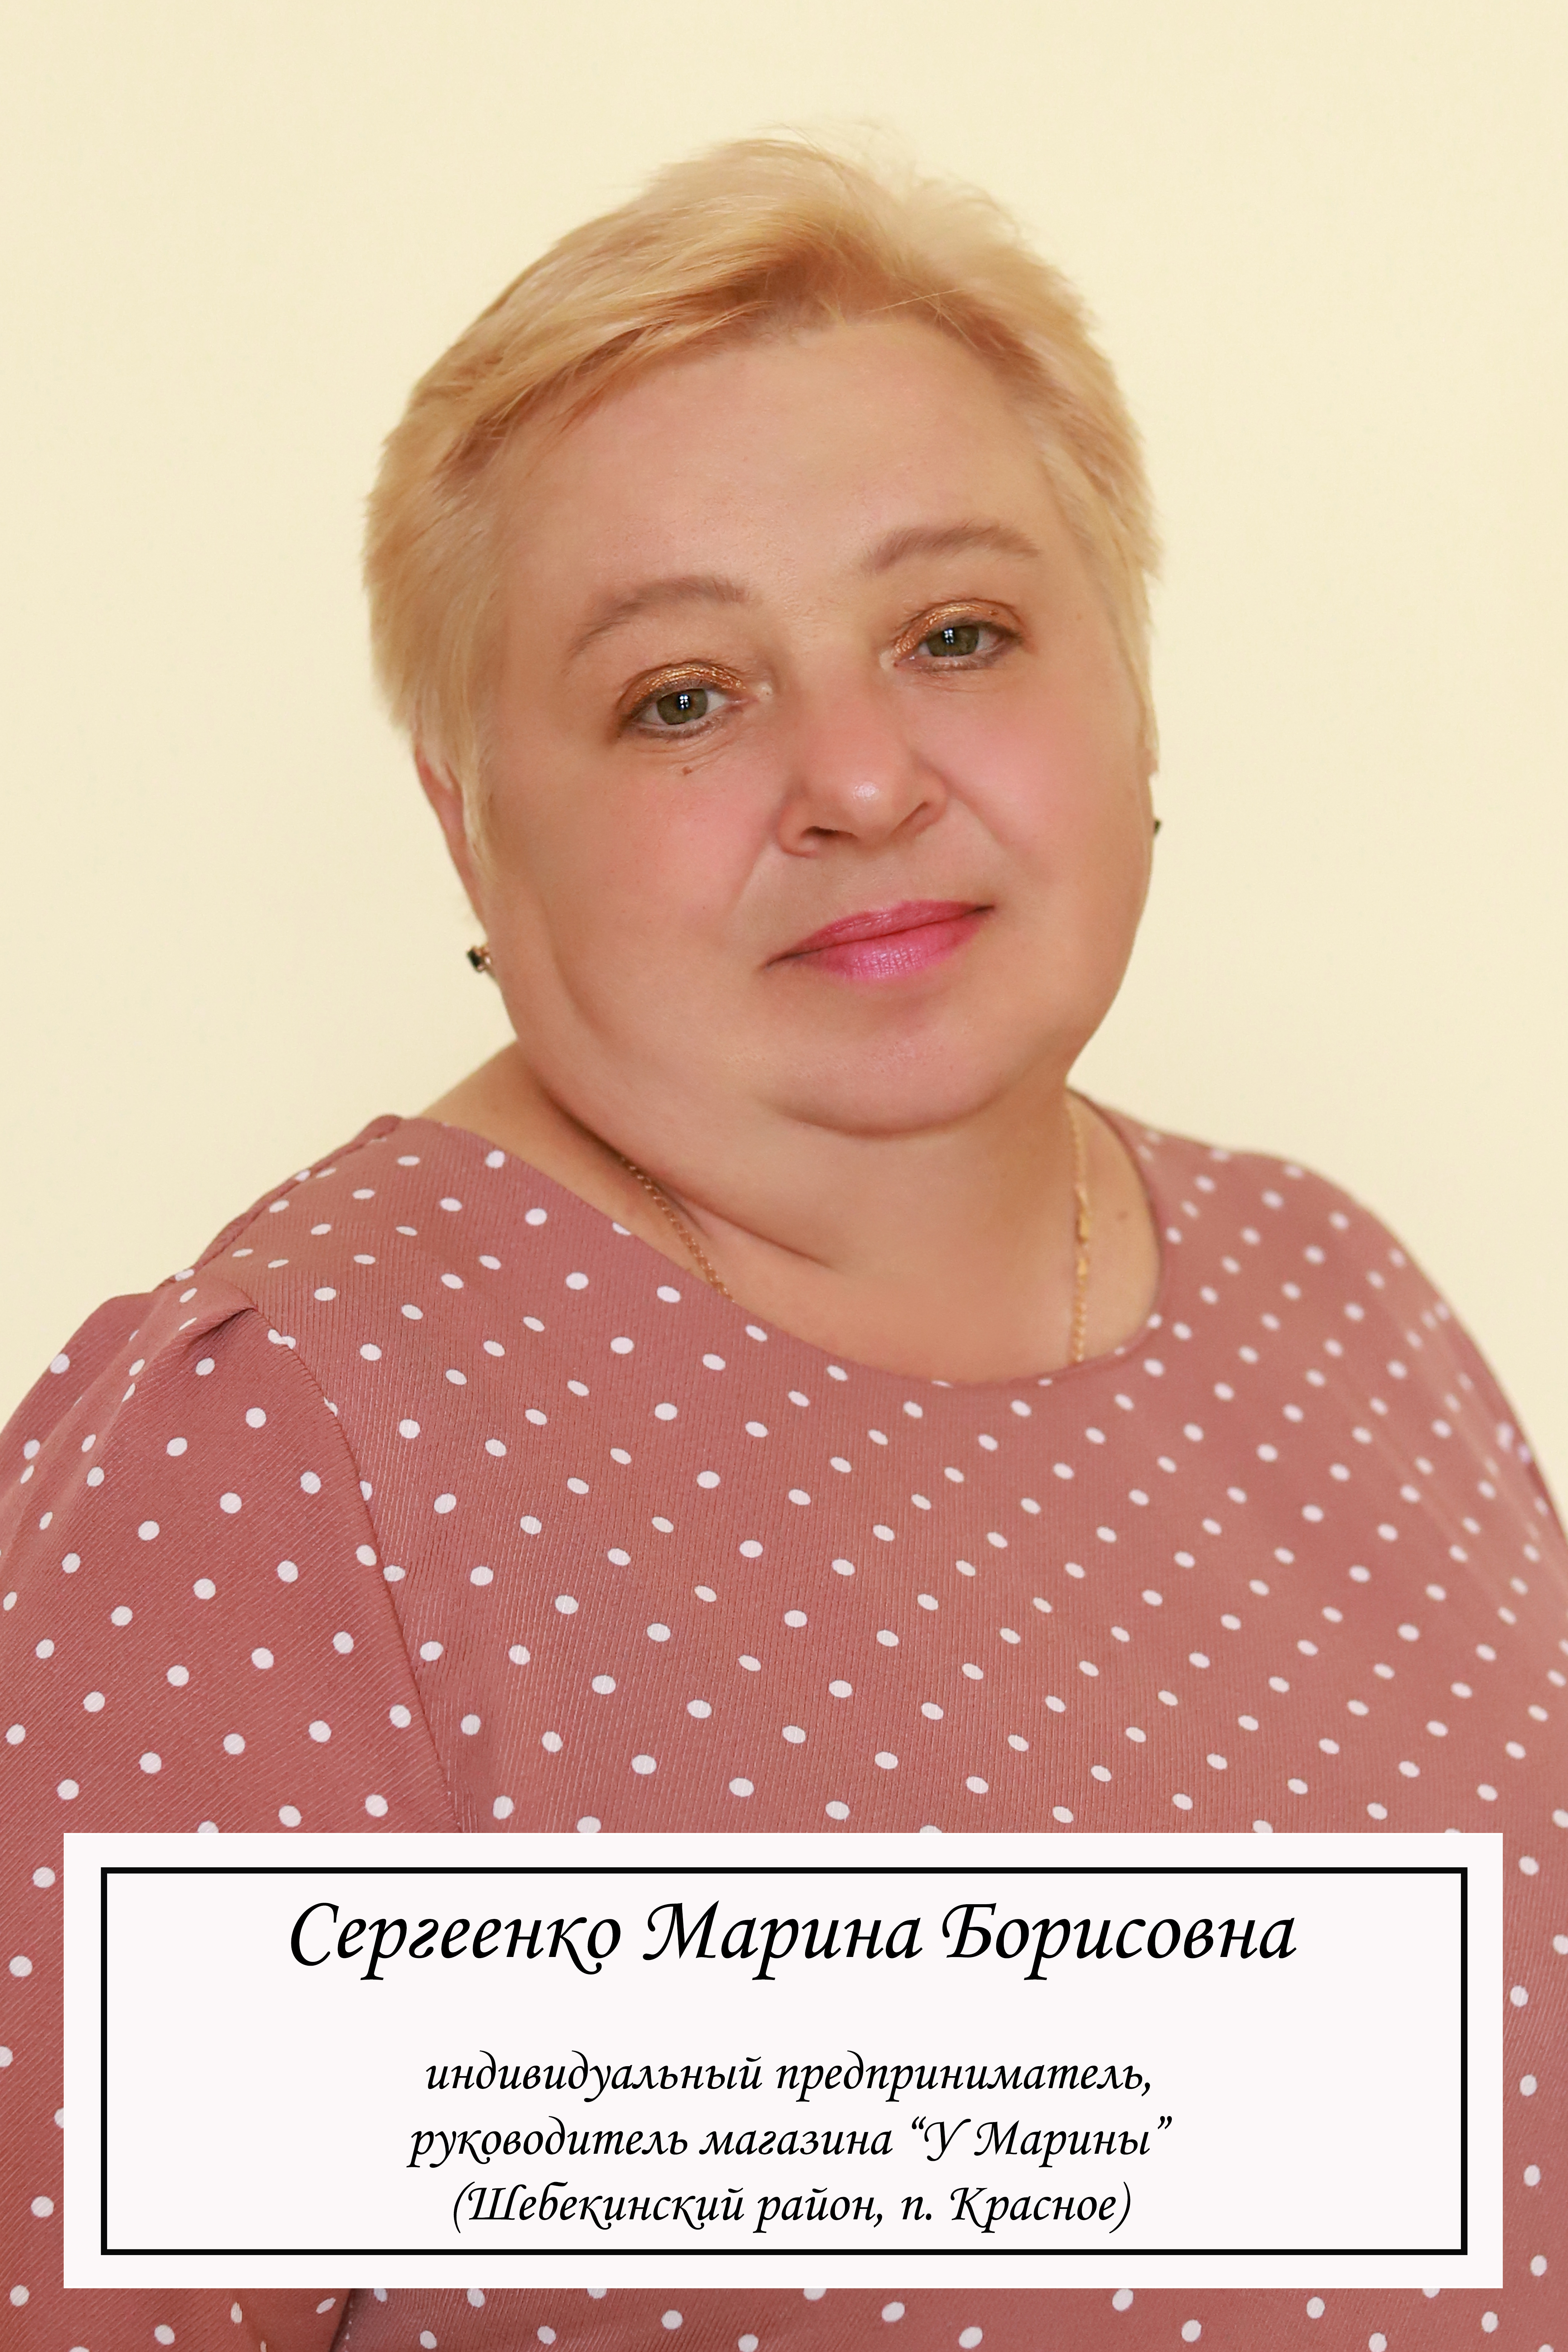 Сергеенко Марина Борисовна.